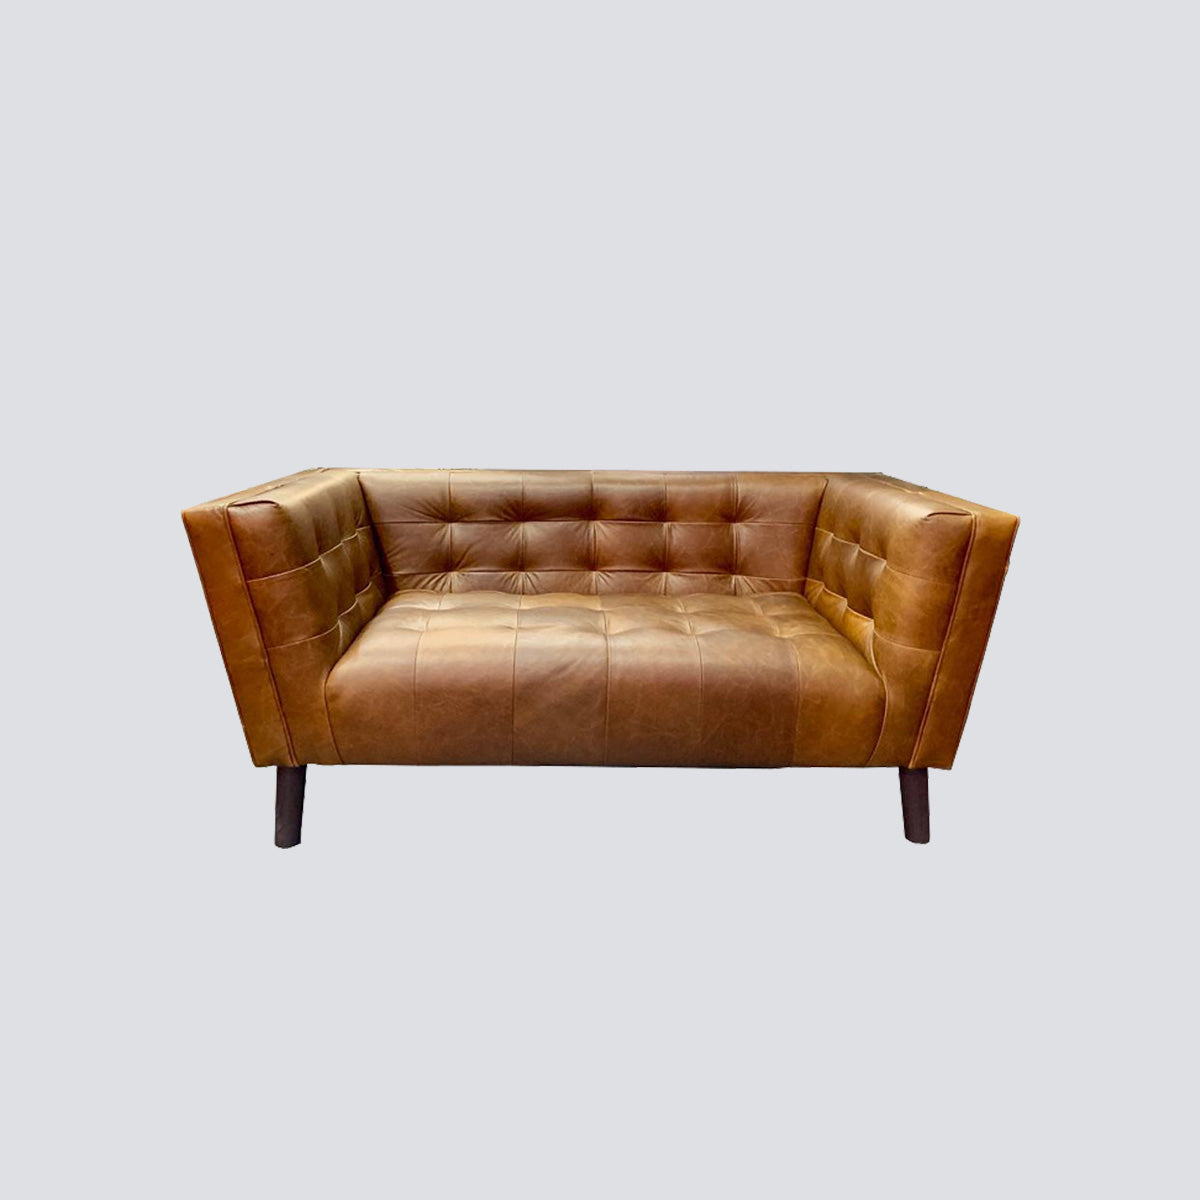 Valiant 2 Seater Leather Sofa